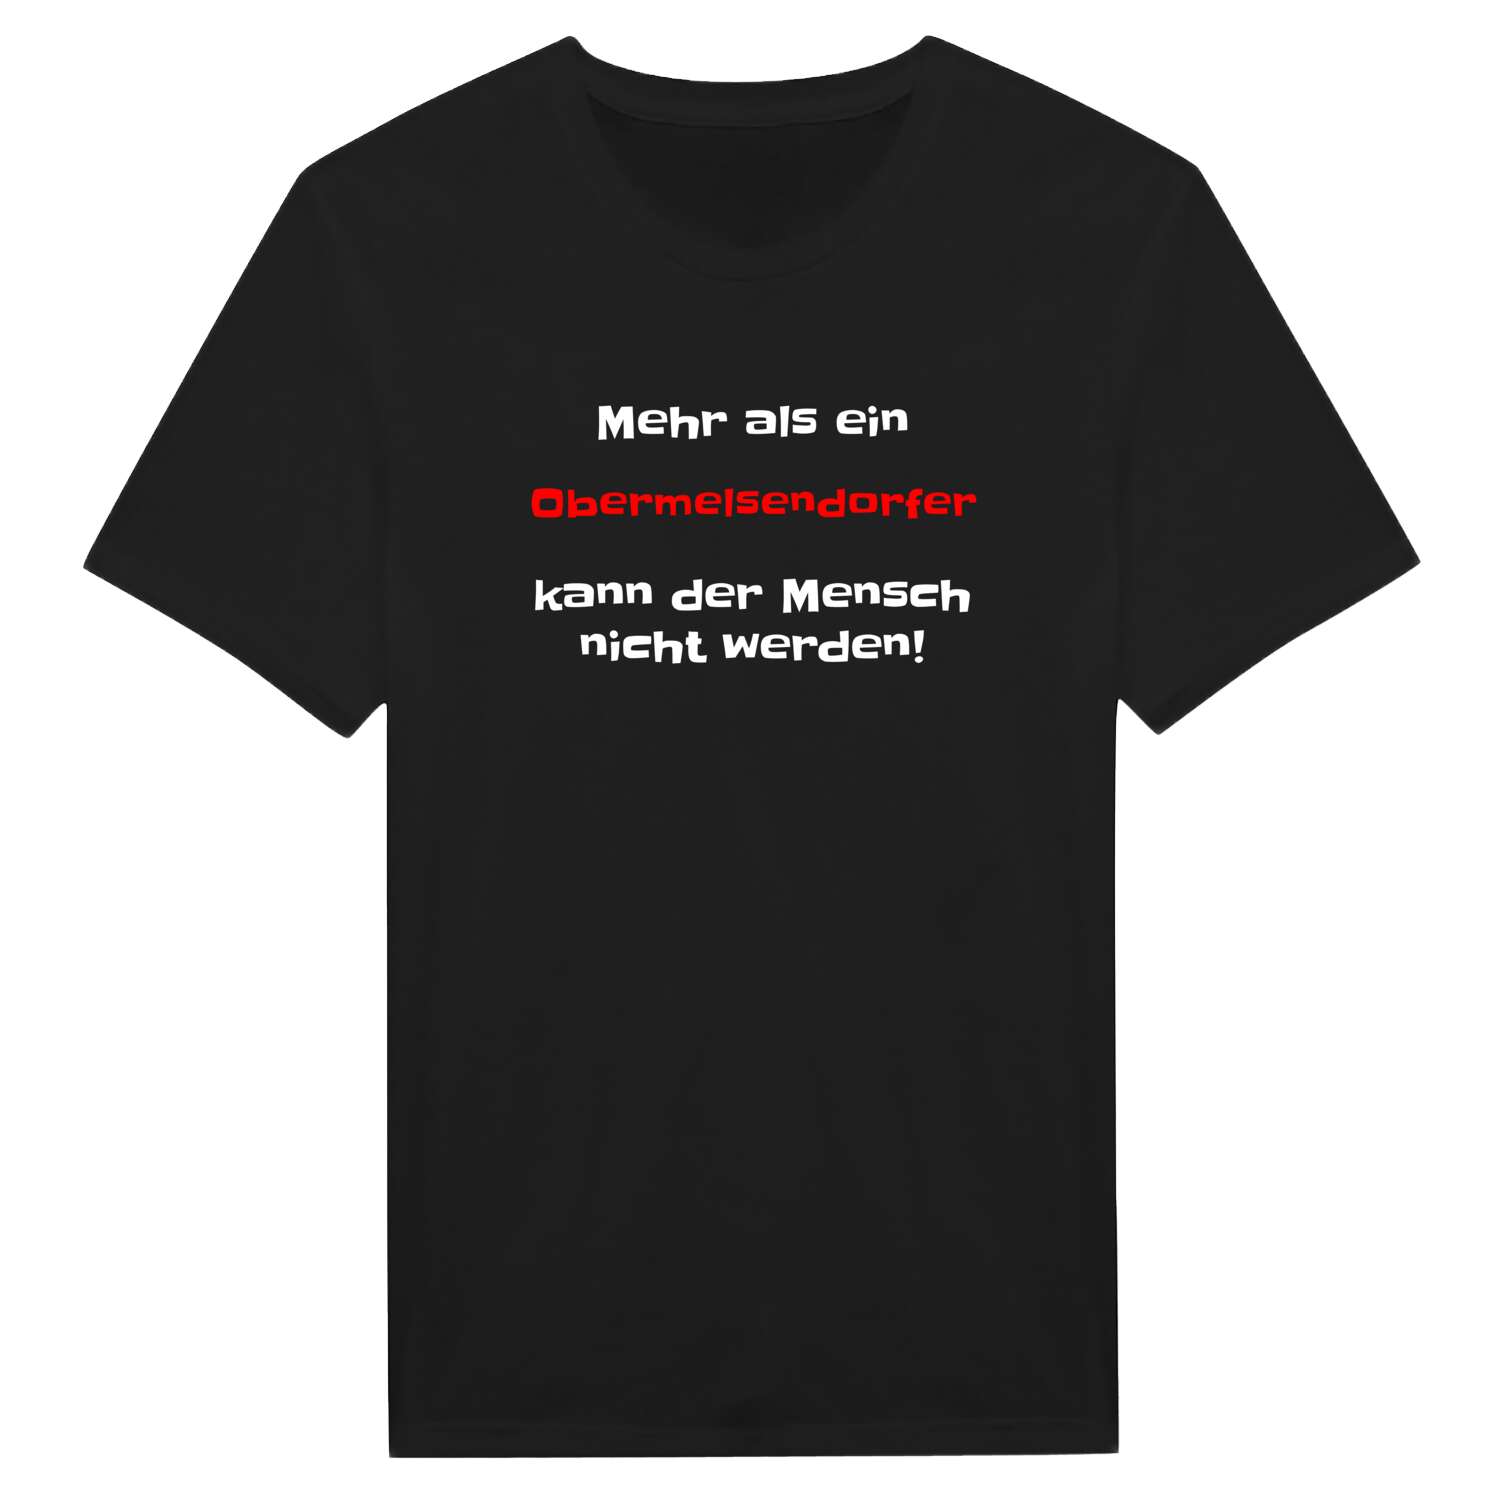 Obermelsendorf T-Shirt »Mehr als ein«